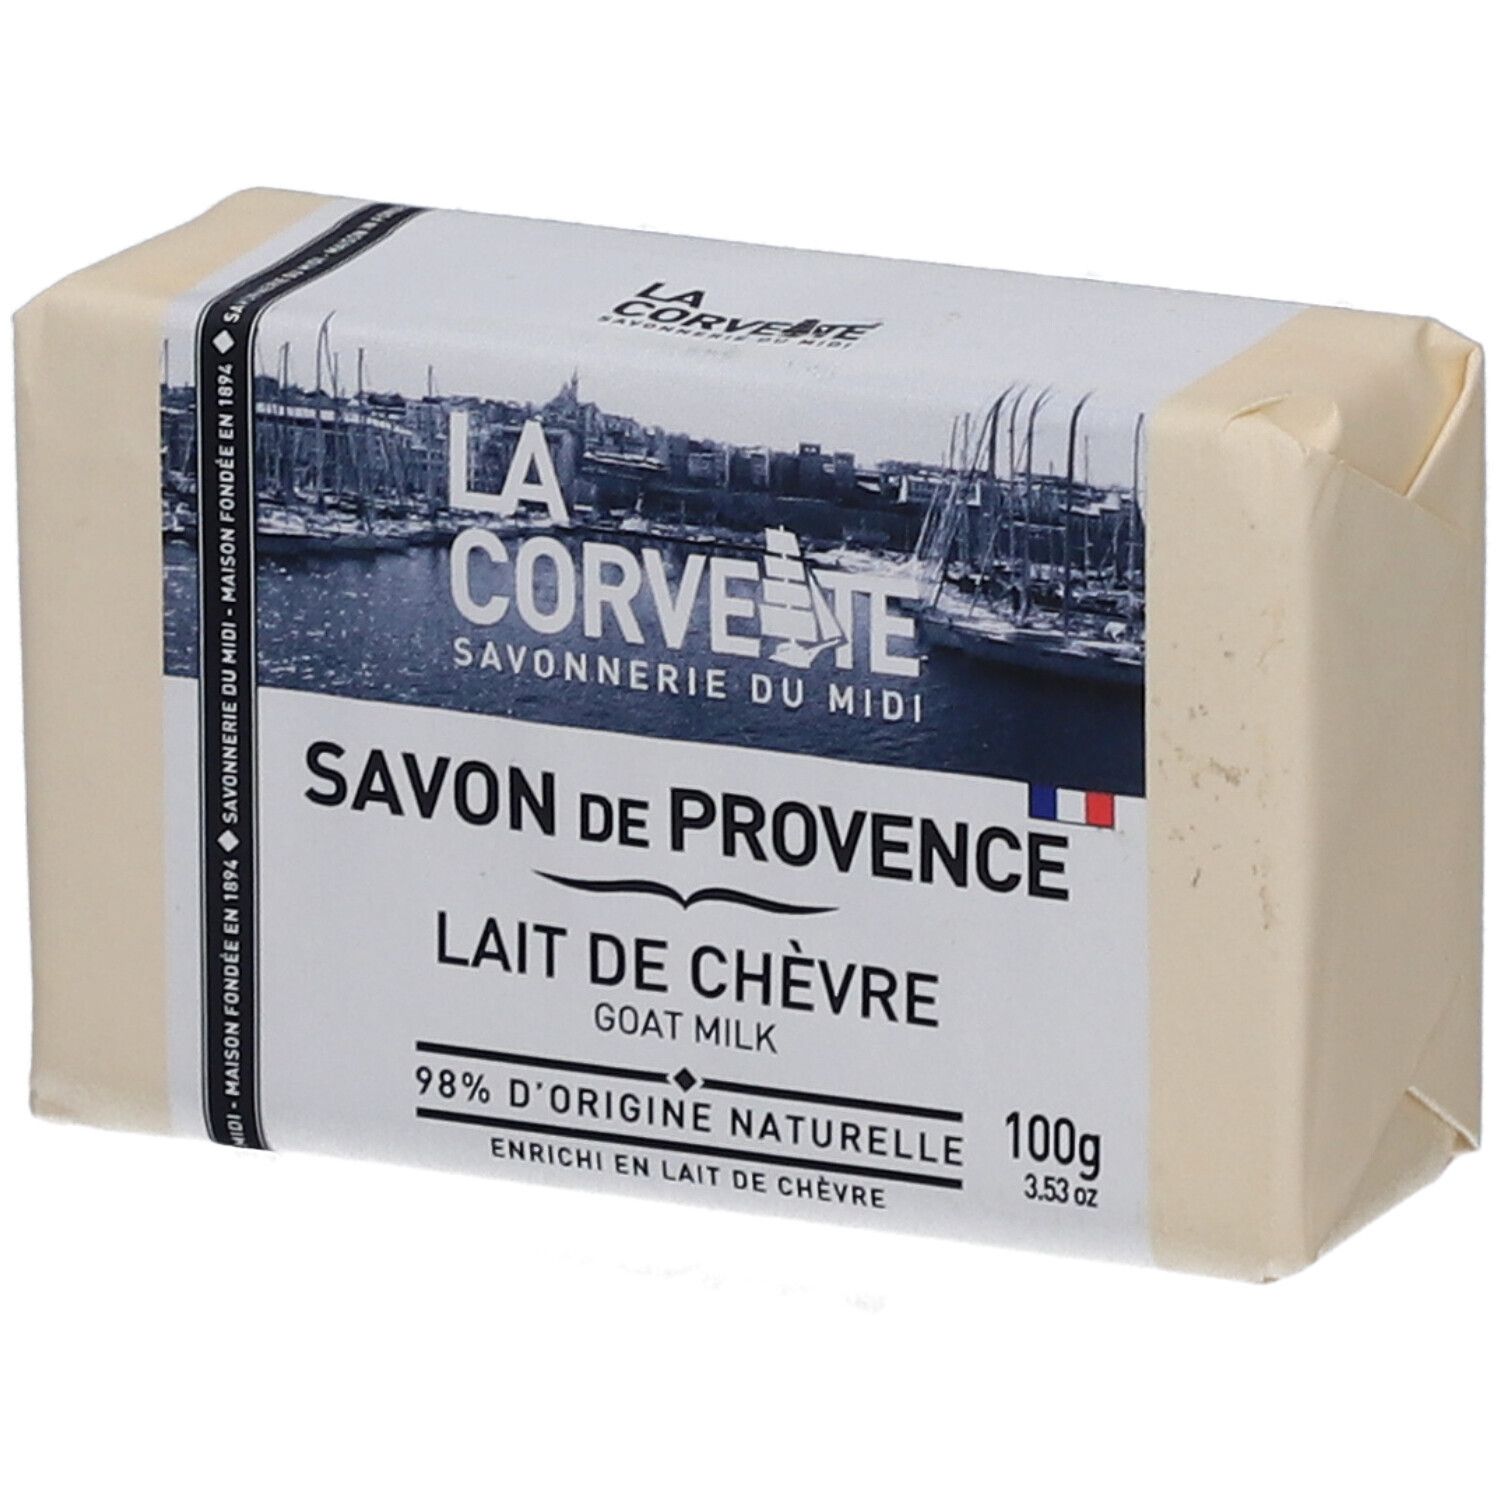 LA Corvette Savon de Provence Lait de chèvre